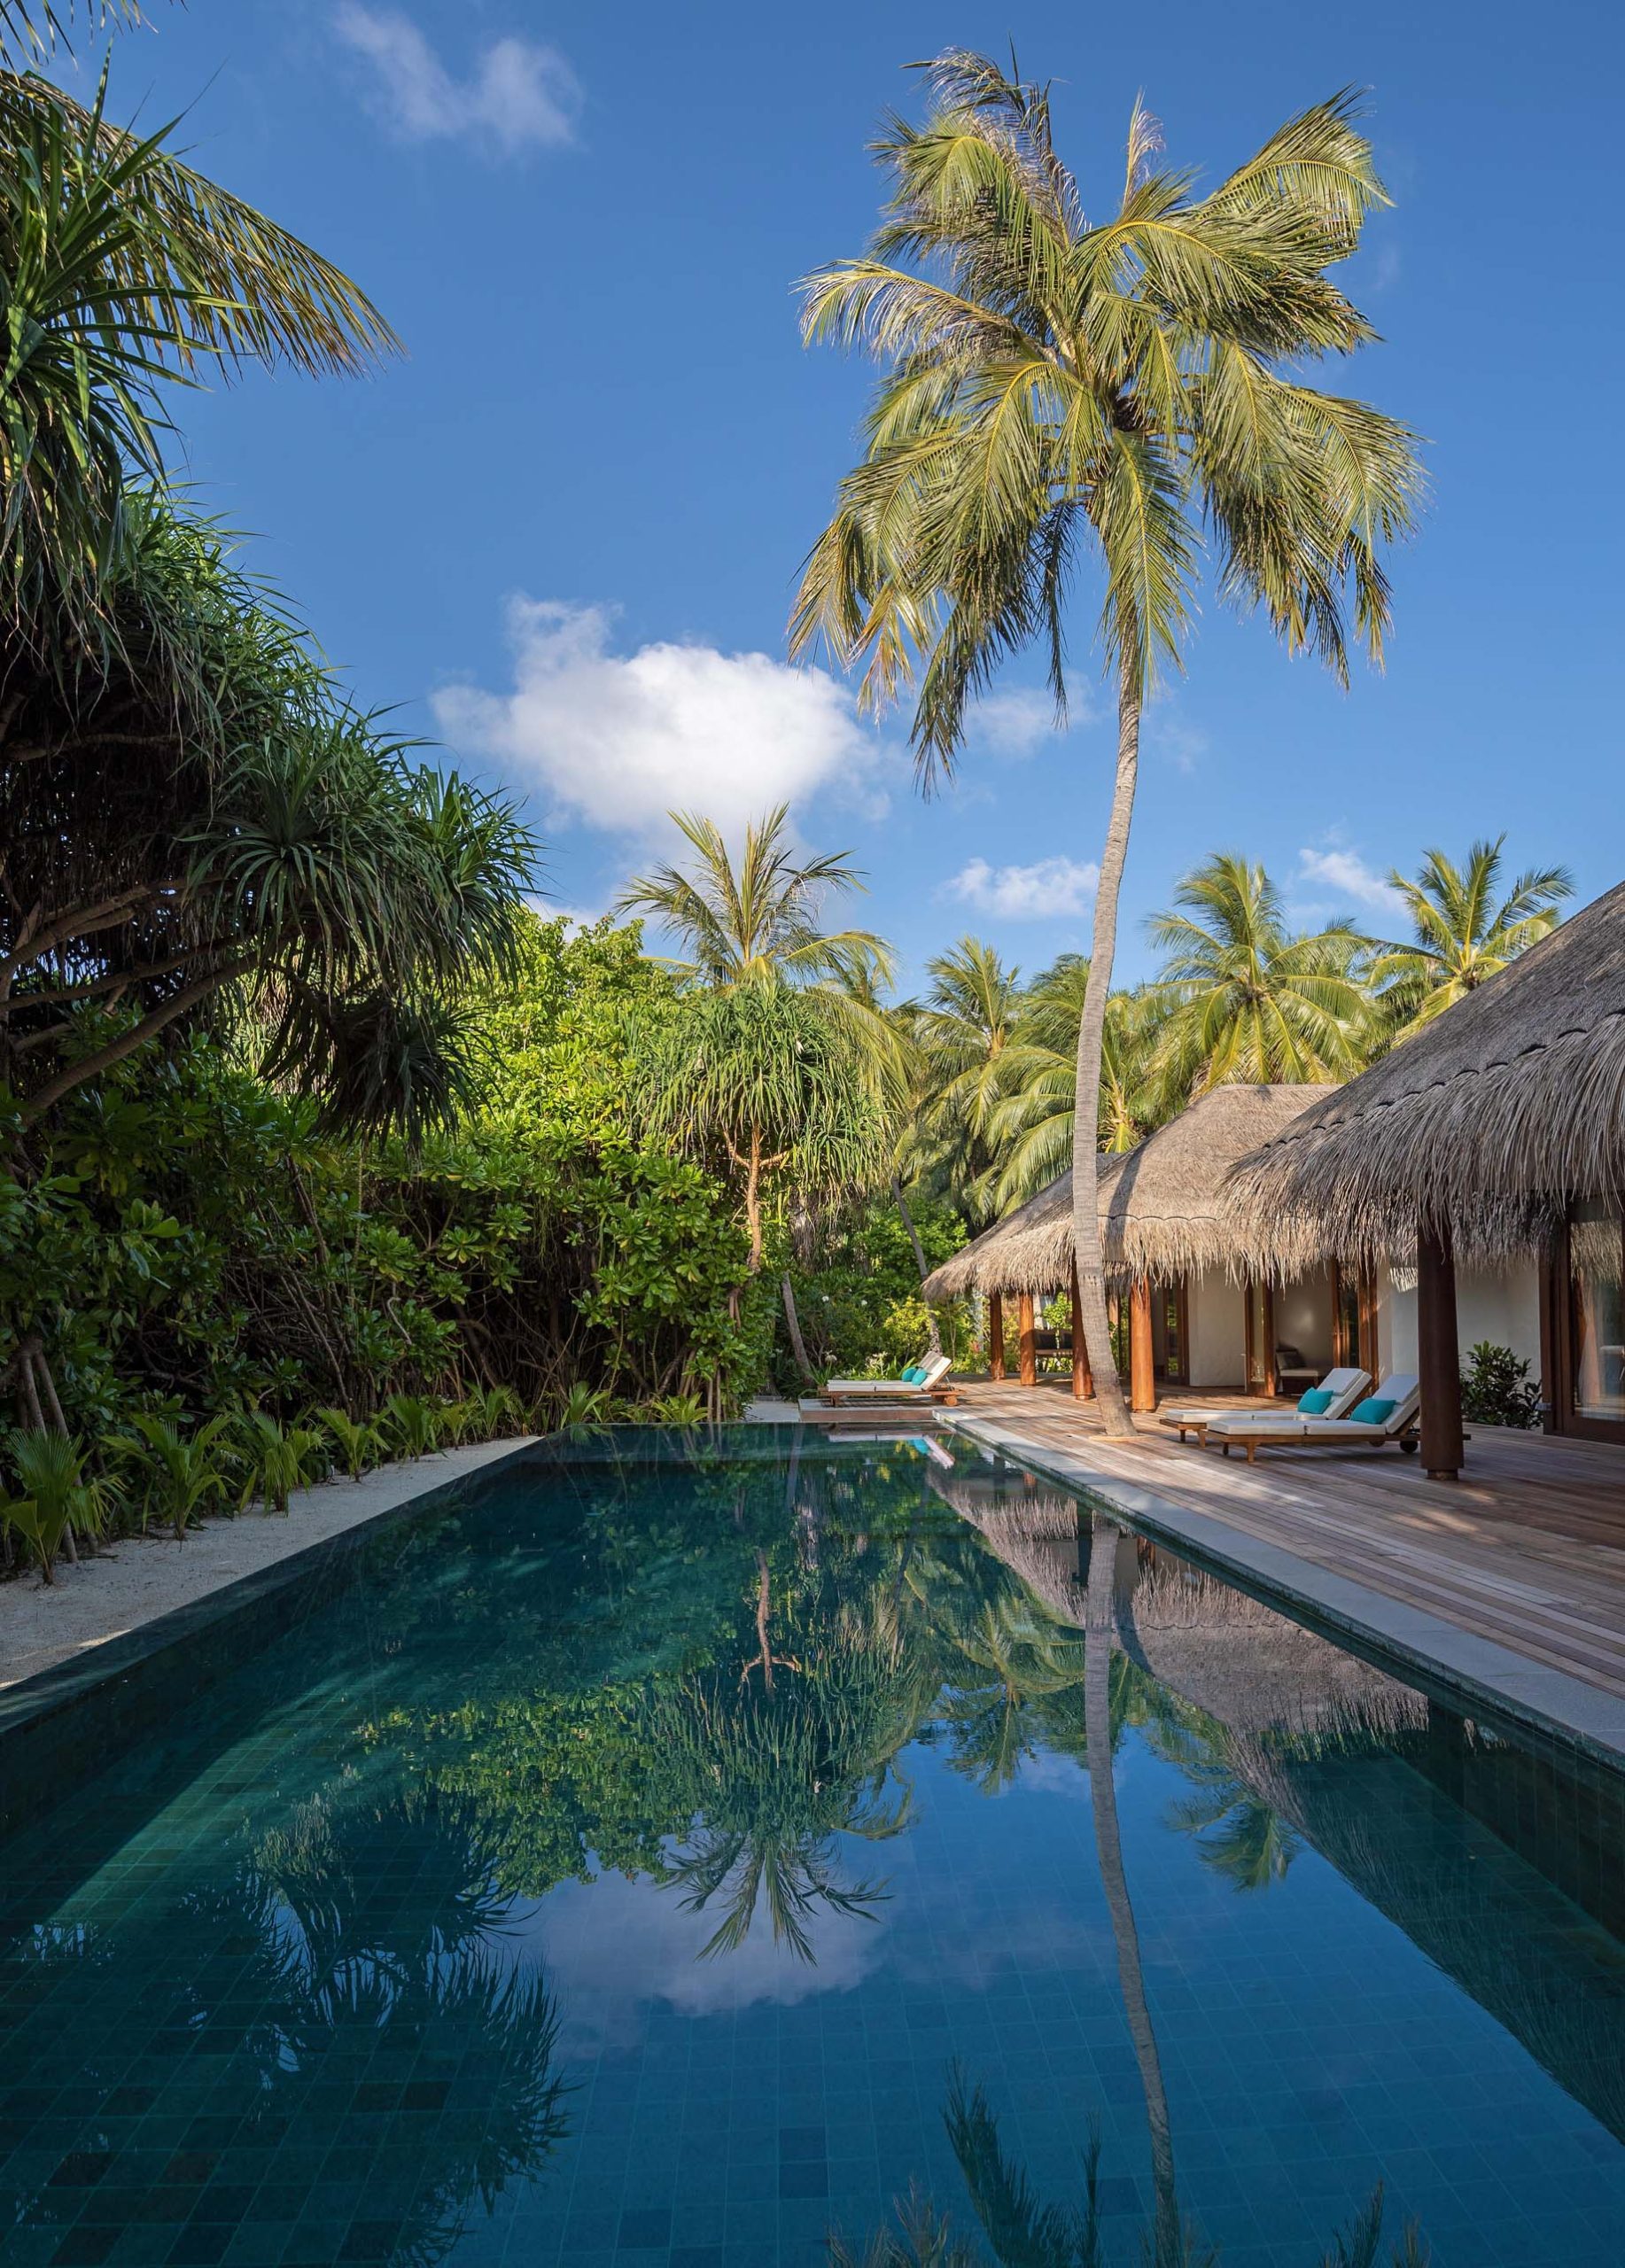 Anantara Kihavah Maldives Villas Resort - Baa Atoll, Maldives - Beach Pool Residence Pool View